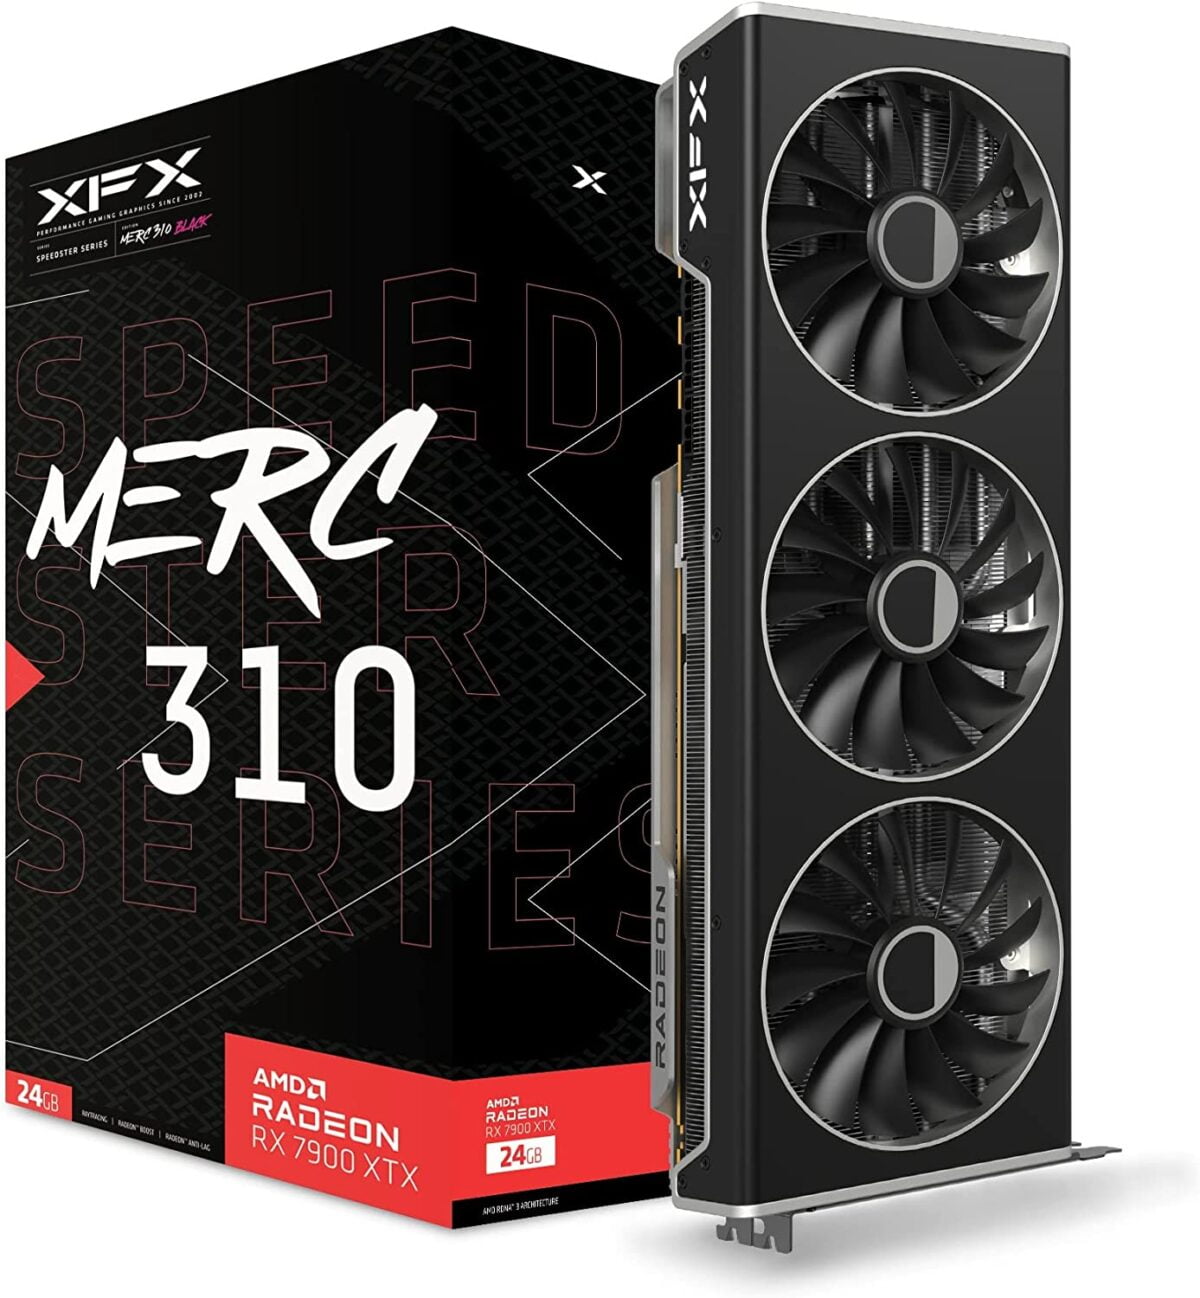 XFX Speedster MERC310 RX-79TMERCU9, RX-79TMERCB9, RX-79XMERCB9 AMD Radeon RX 7900XT Listed on Amazon US